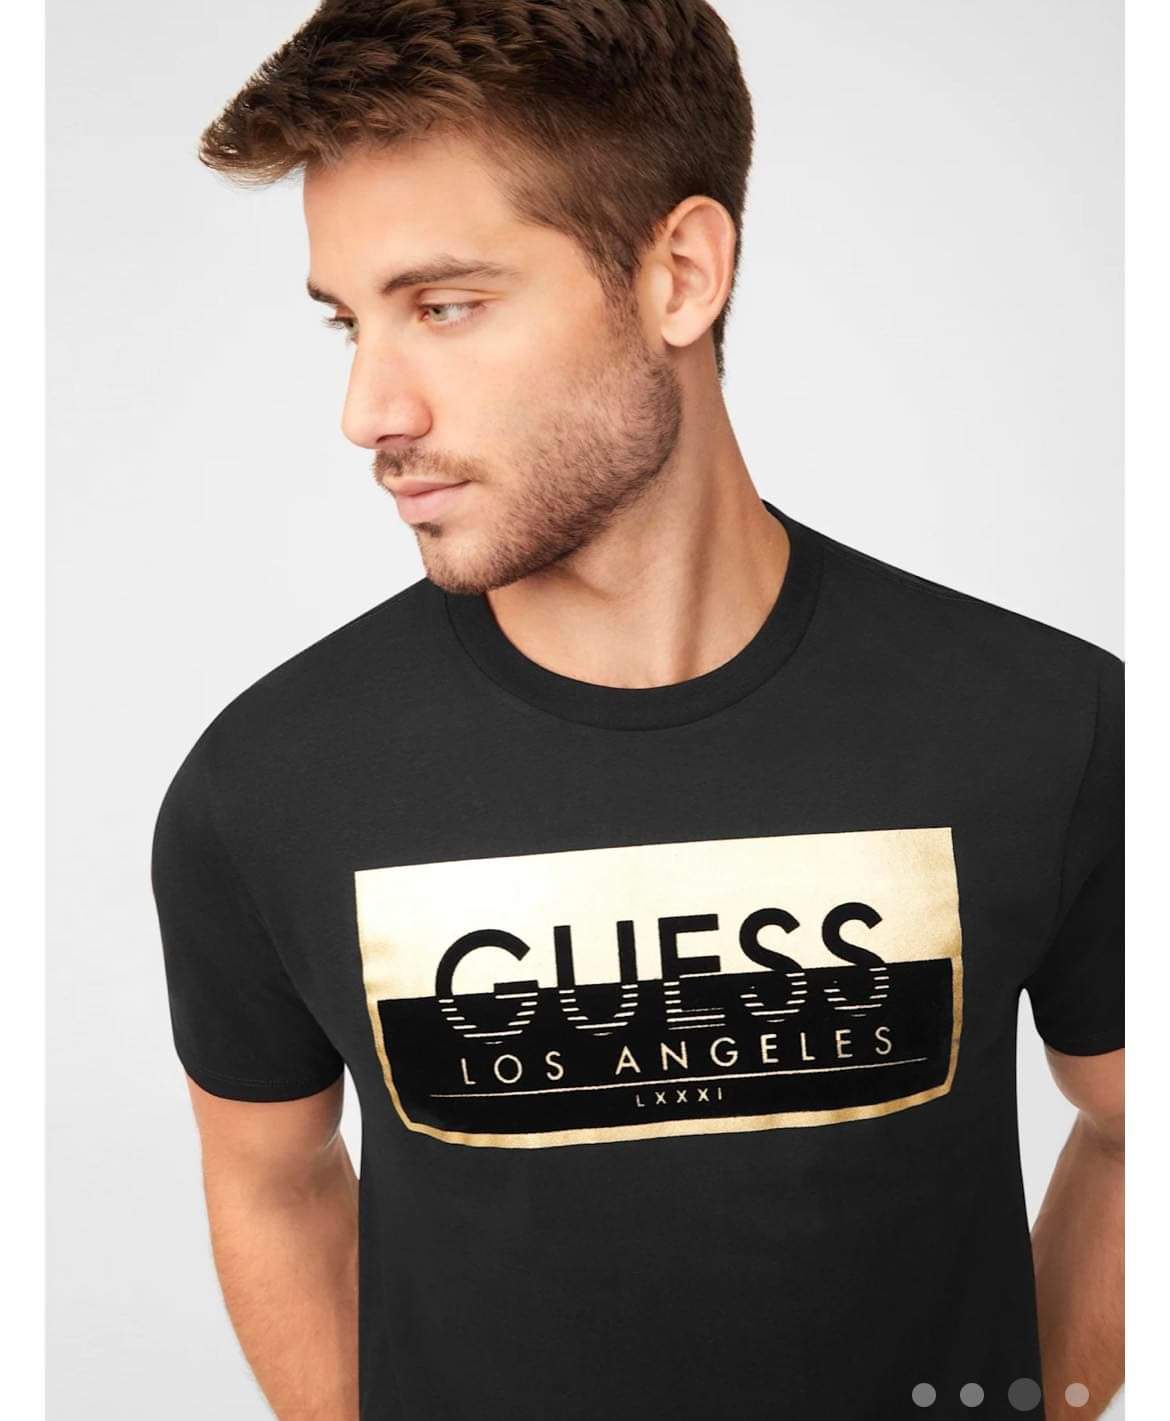 Guess tshirt – ONE Shopping Mall